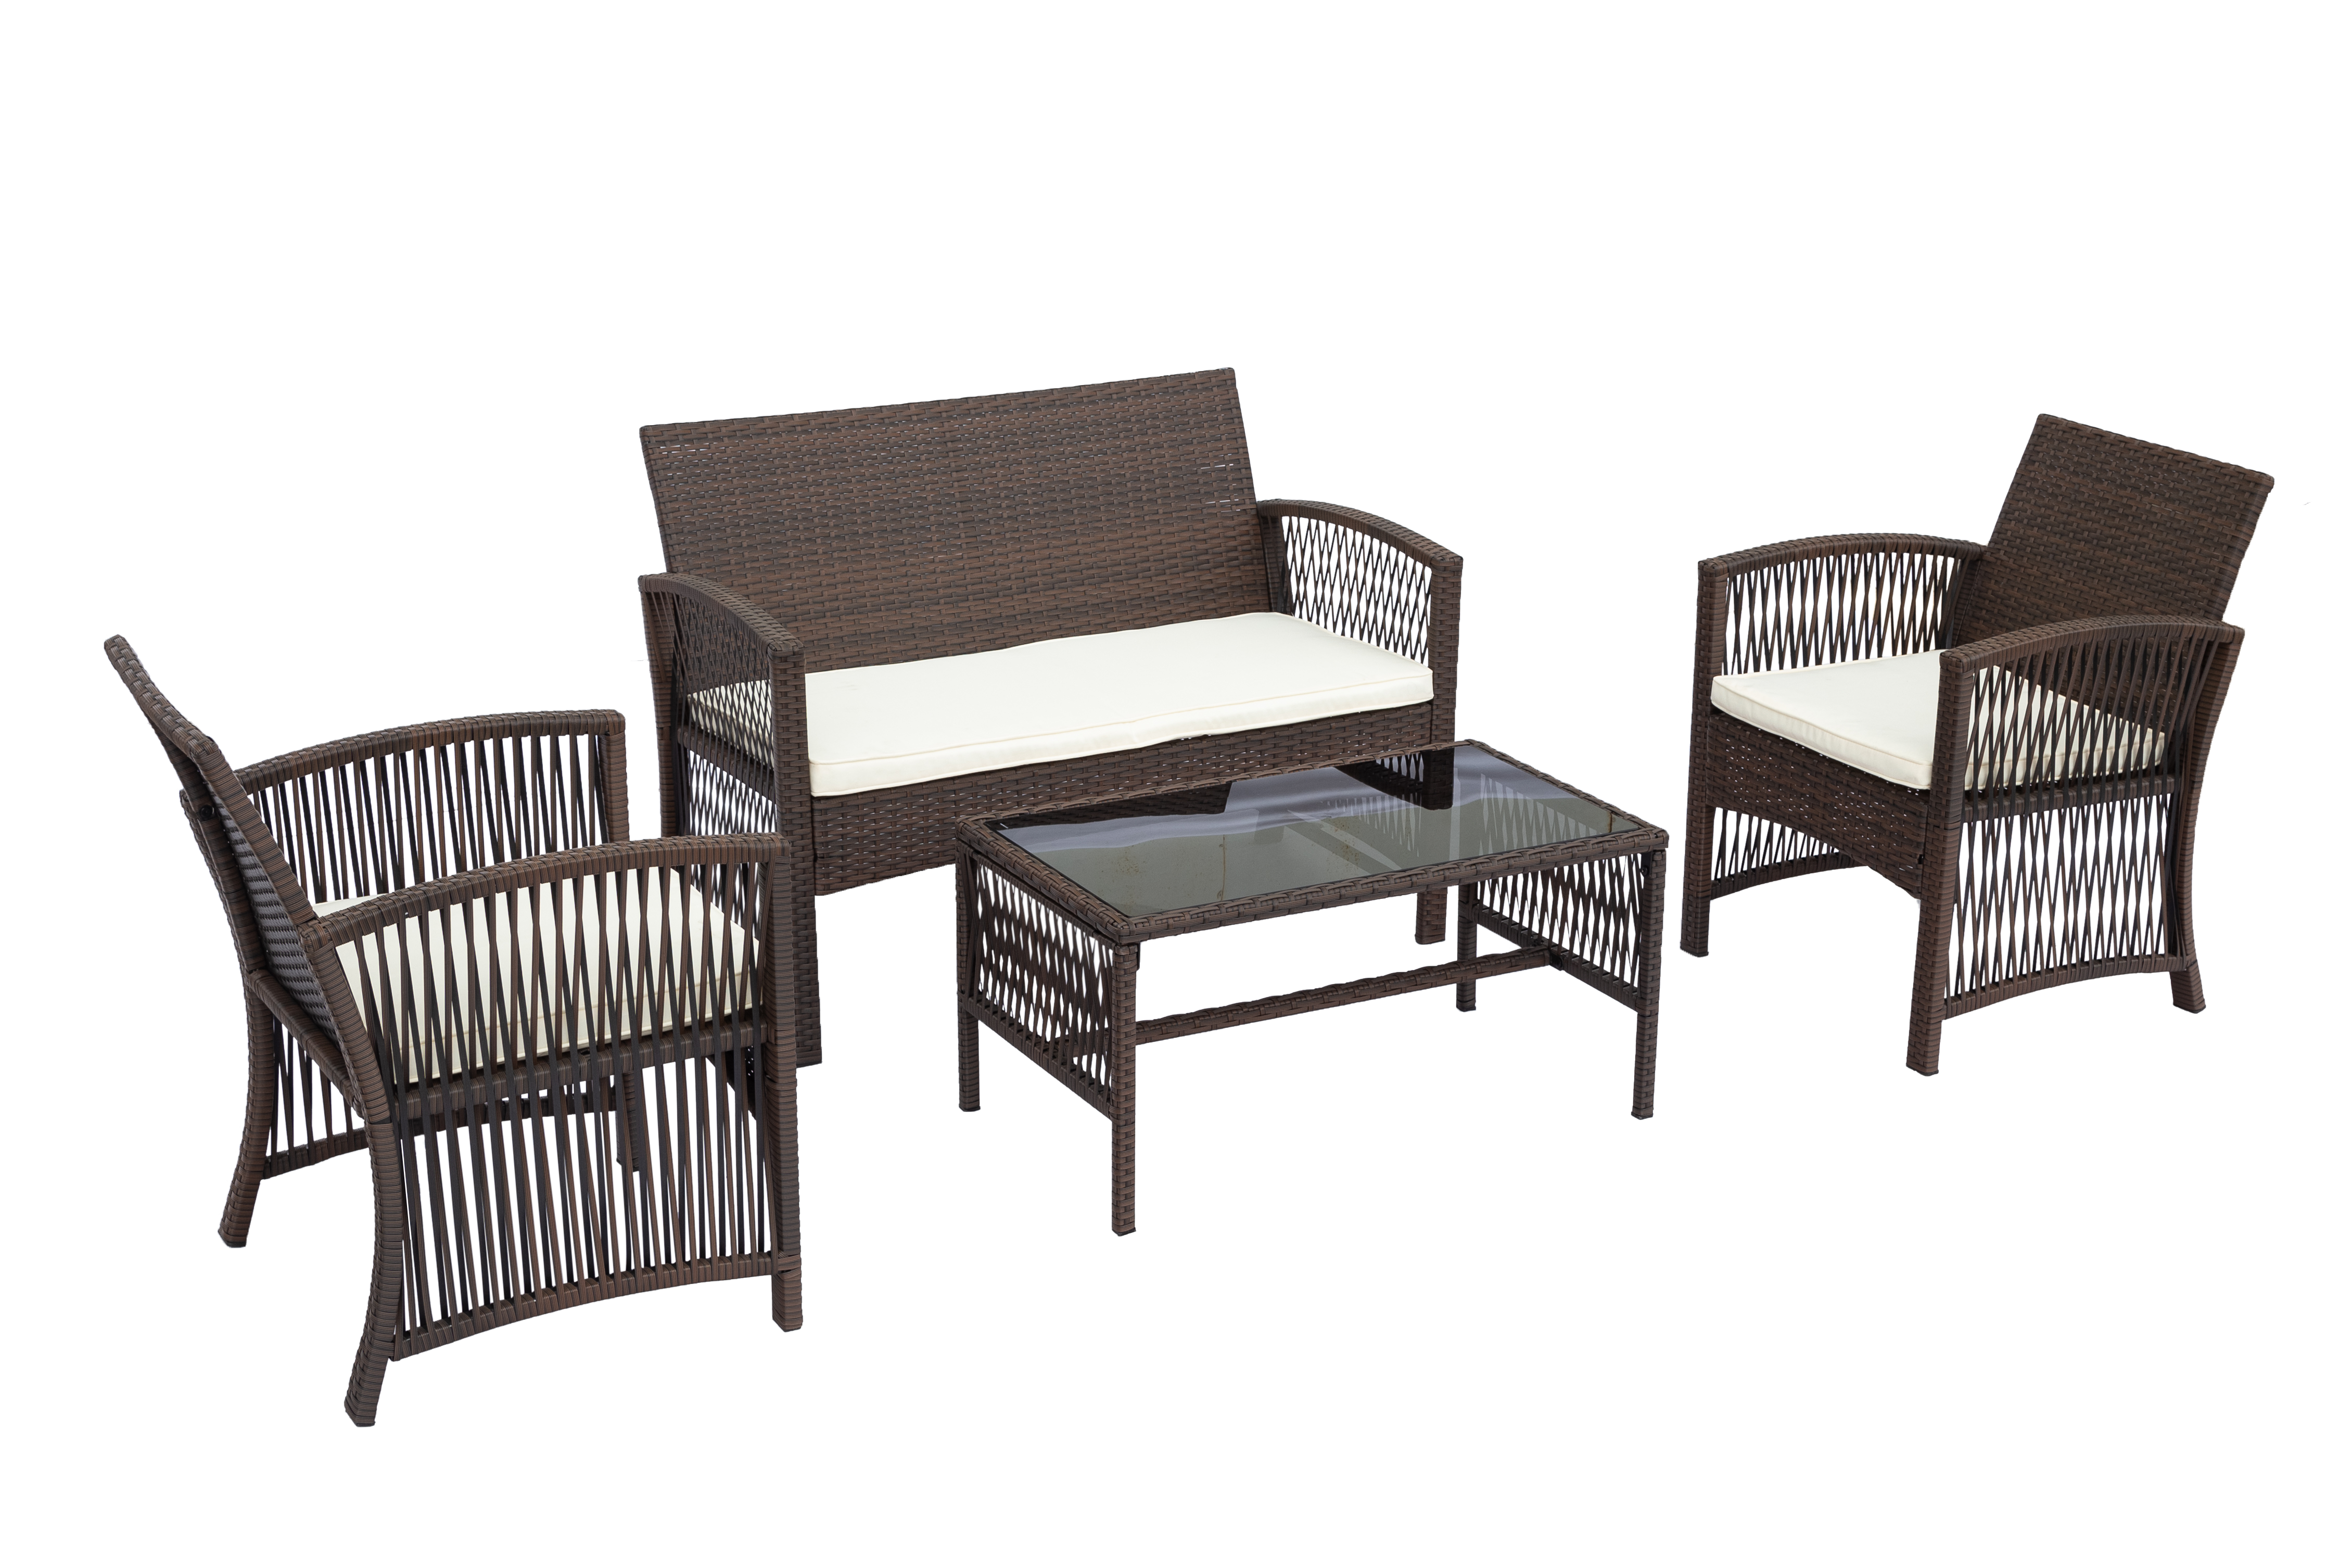 WEGO Brown - Bộ bàn ghế sân vườn/ Ban Công/ Hồ bơi -  3 GHẾ NGỒI // Outdoor Furniture Rattan Chair Set Rattan Sofa 3 Seater Garden Table and Chair